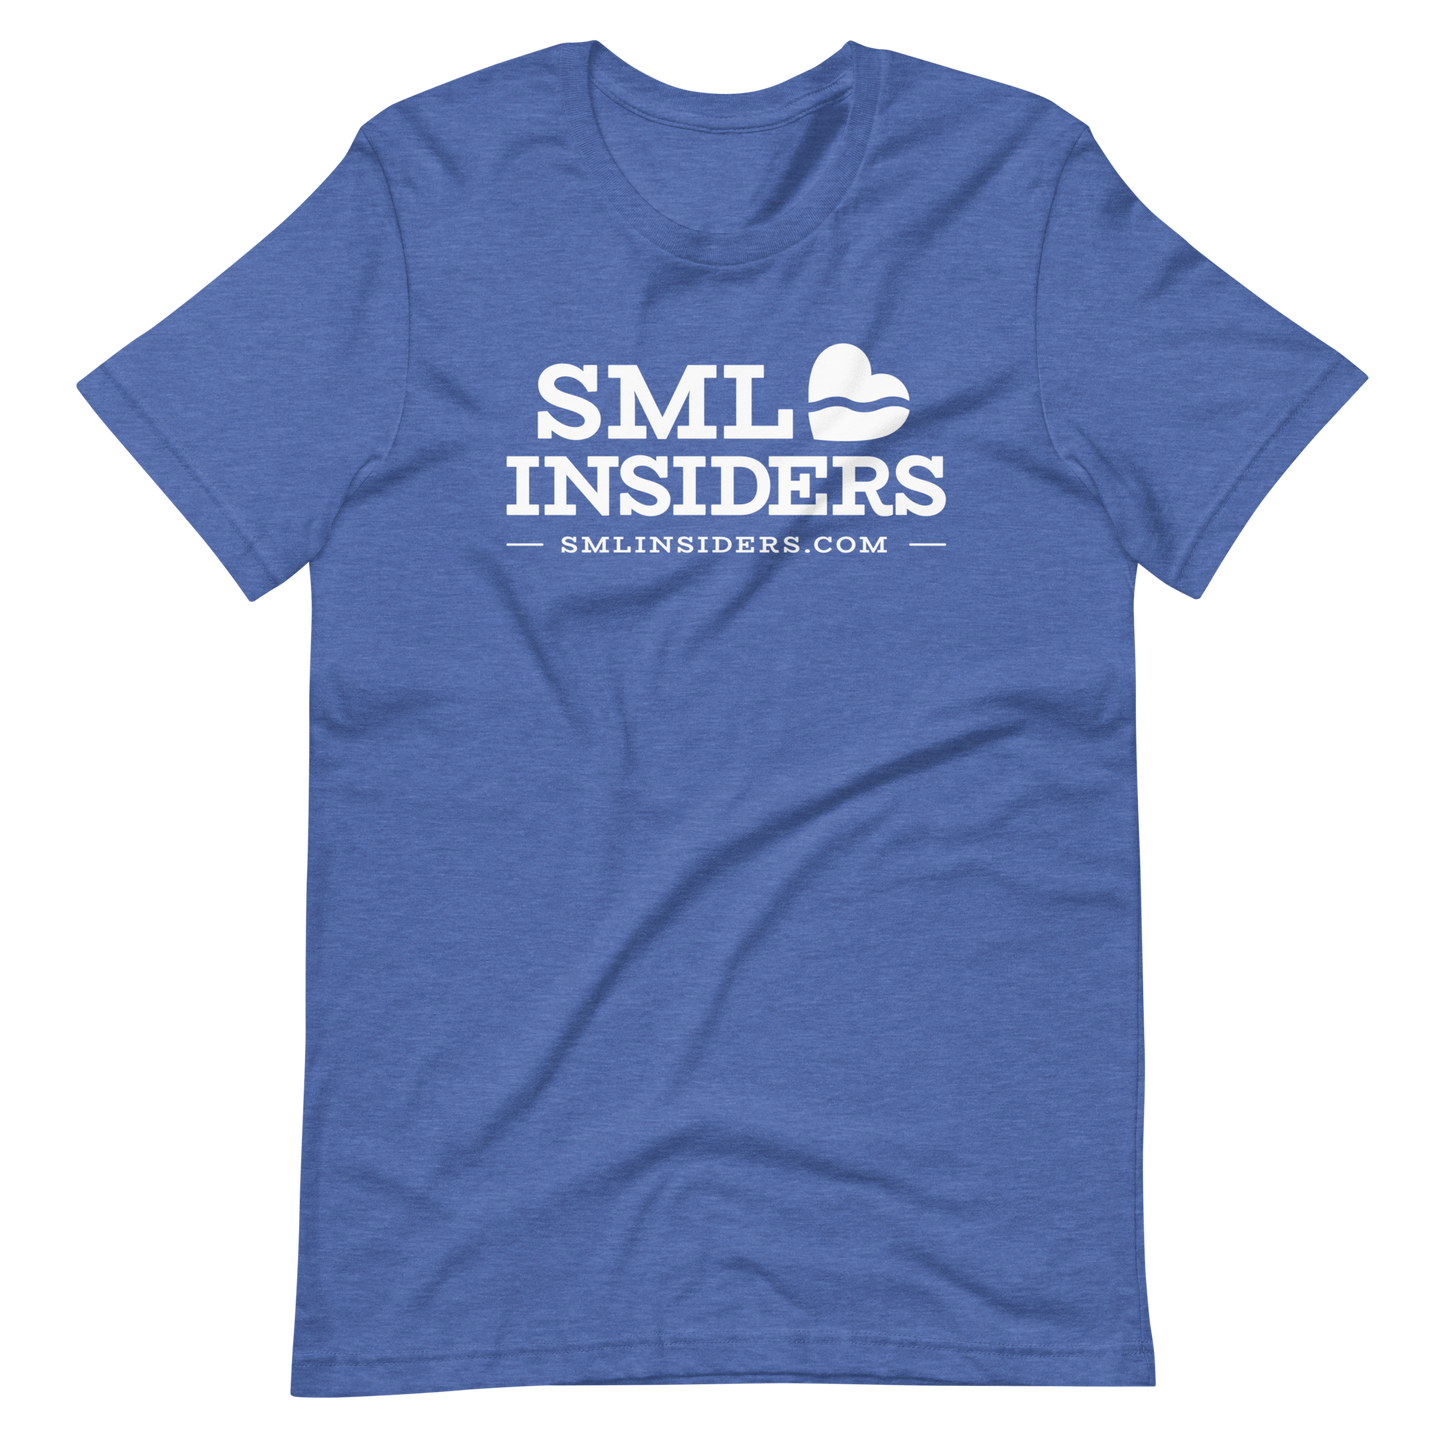 Smith Mountain Lake Insiders Short Sleeve Unisex T-shirt